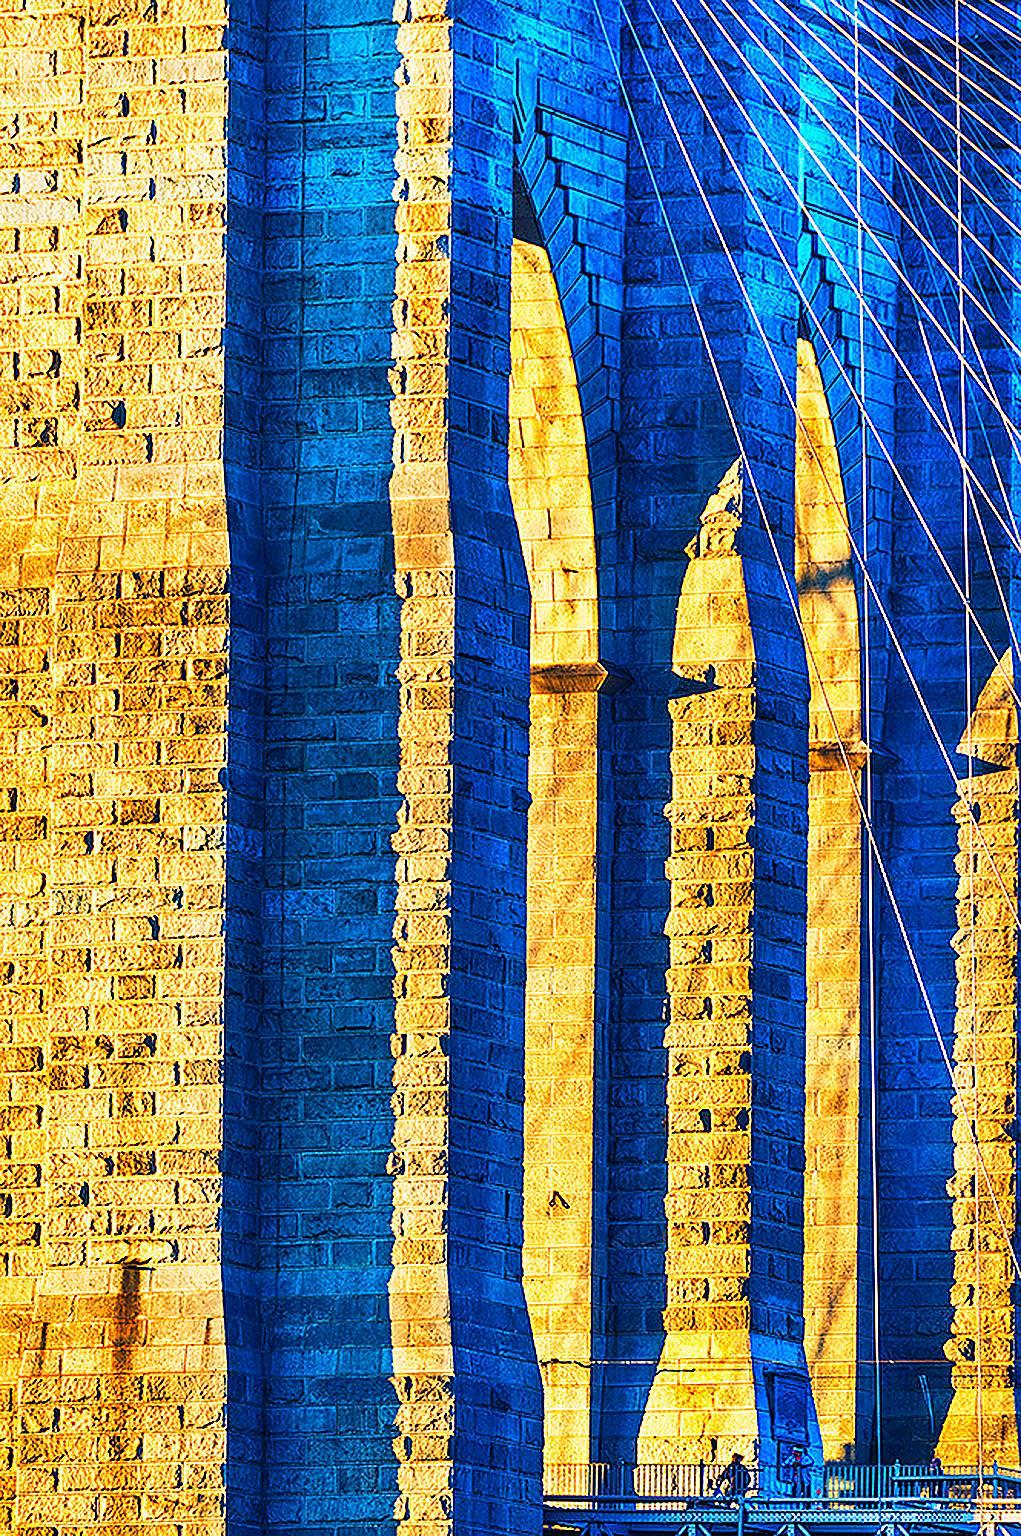 Brooklyn Bridge in Blau und Gold, Farbfotografie von Mitchell Funk 